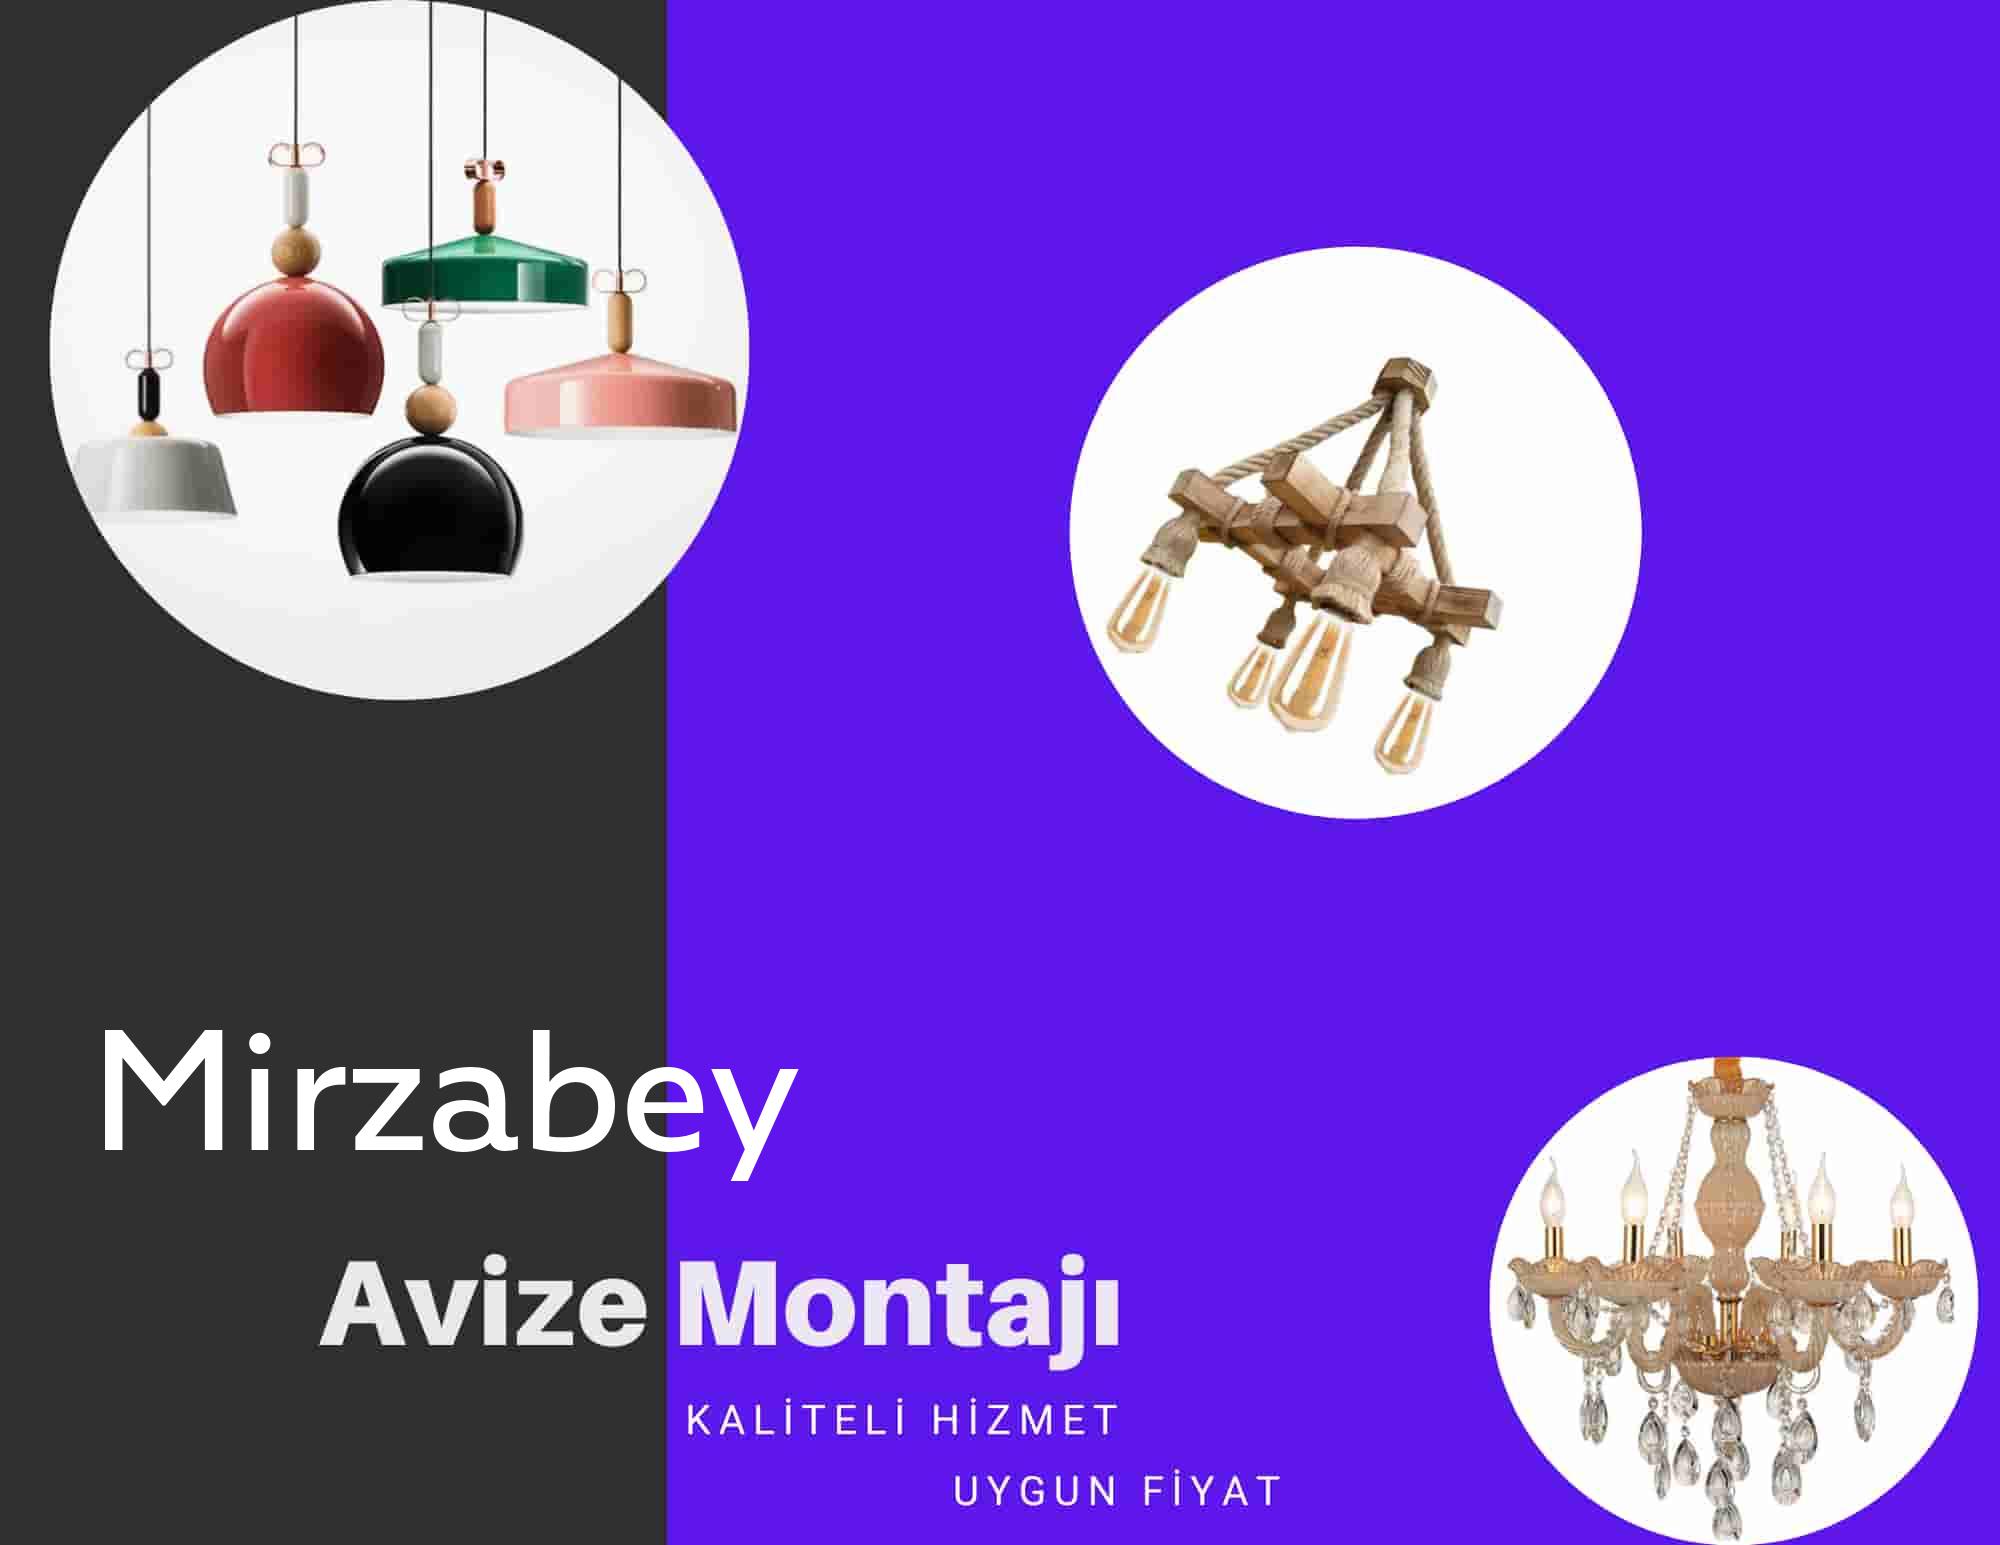 Mirzabey de avize montajı yapan yerler arıyorsanız elektrikcicagir anında size profesyonel avize montajı ustasını yönlendirir.